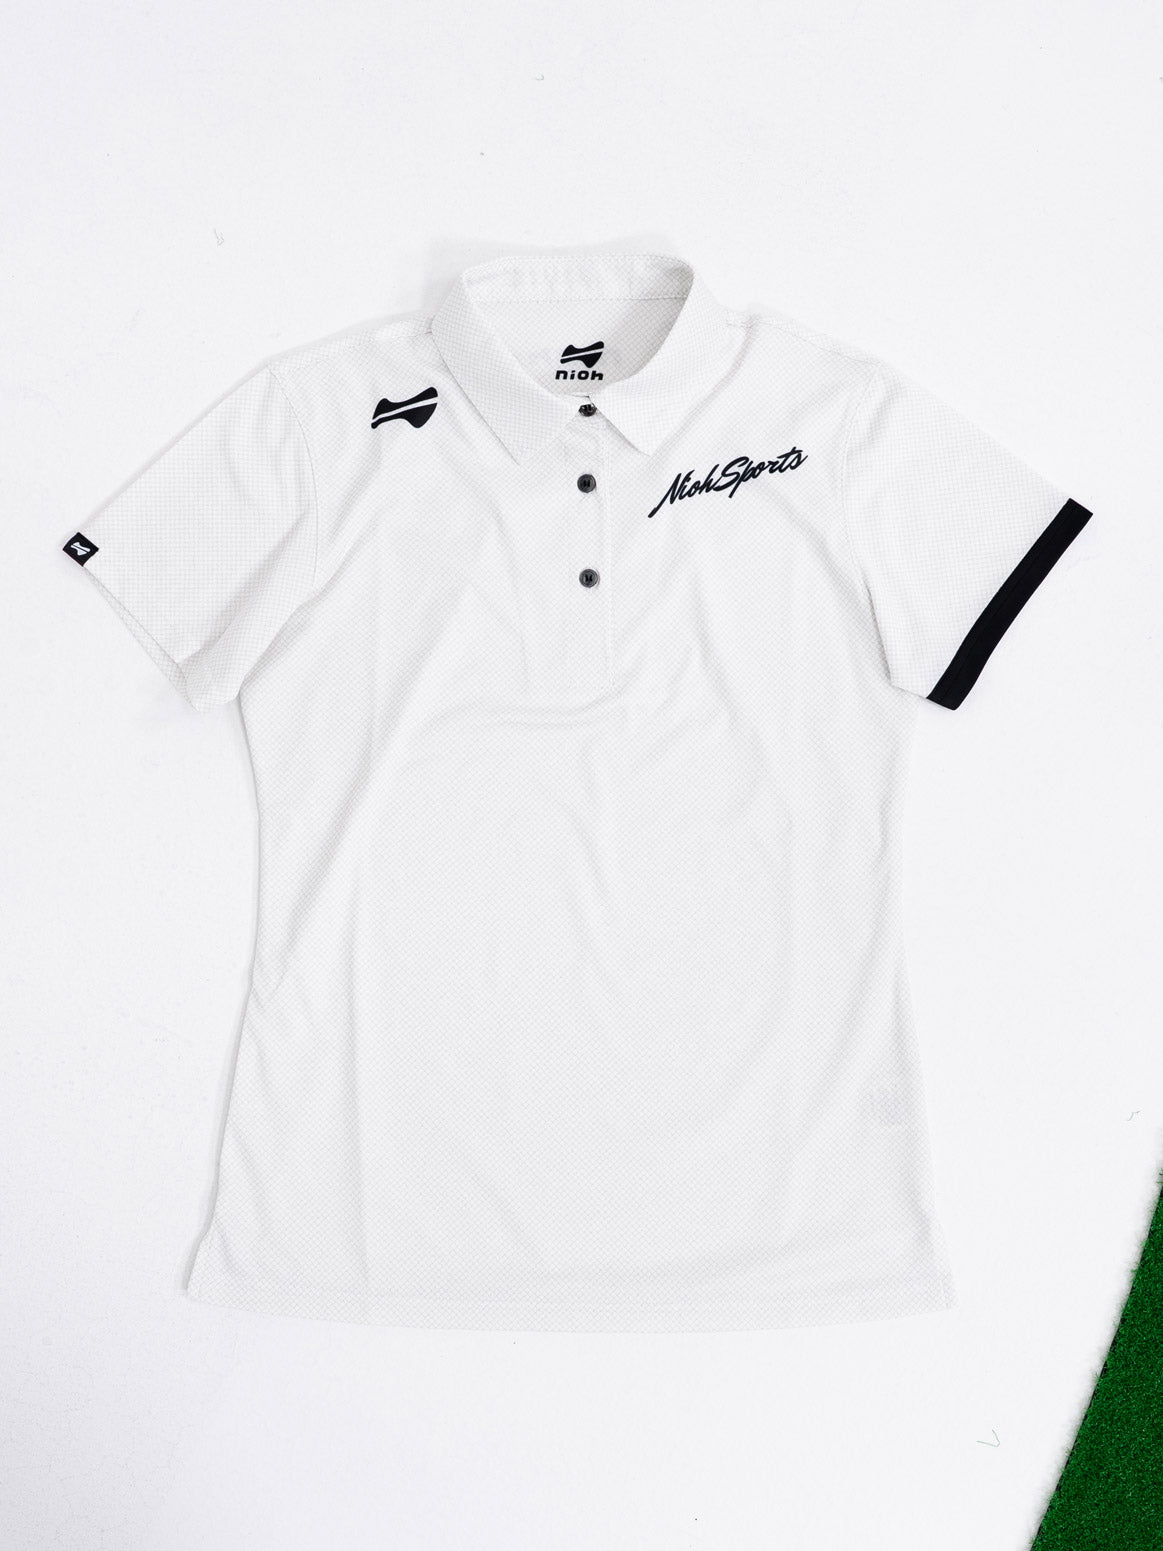 【お求めやすい価格になりました】レディースメッシュロゴ半袖ゴルフポロシャツ-ホワイト